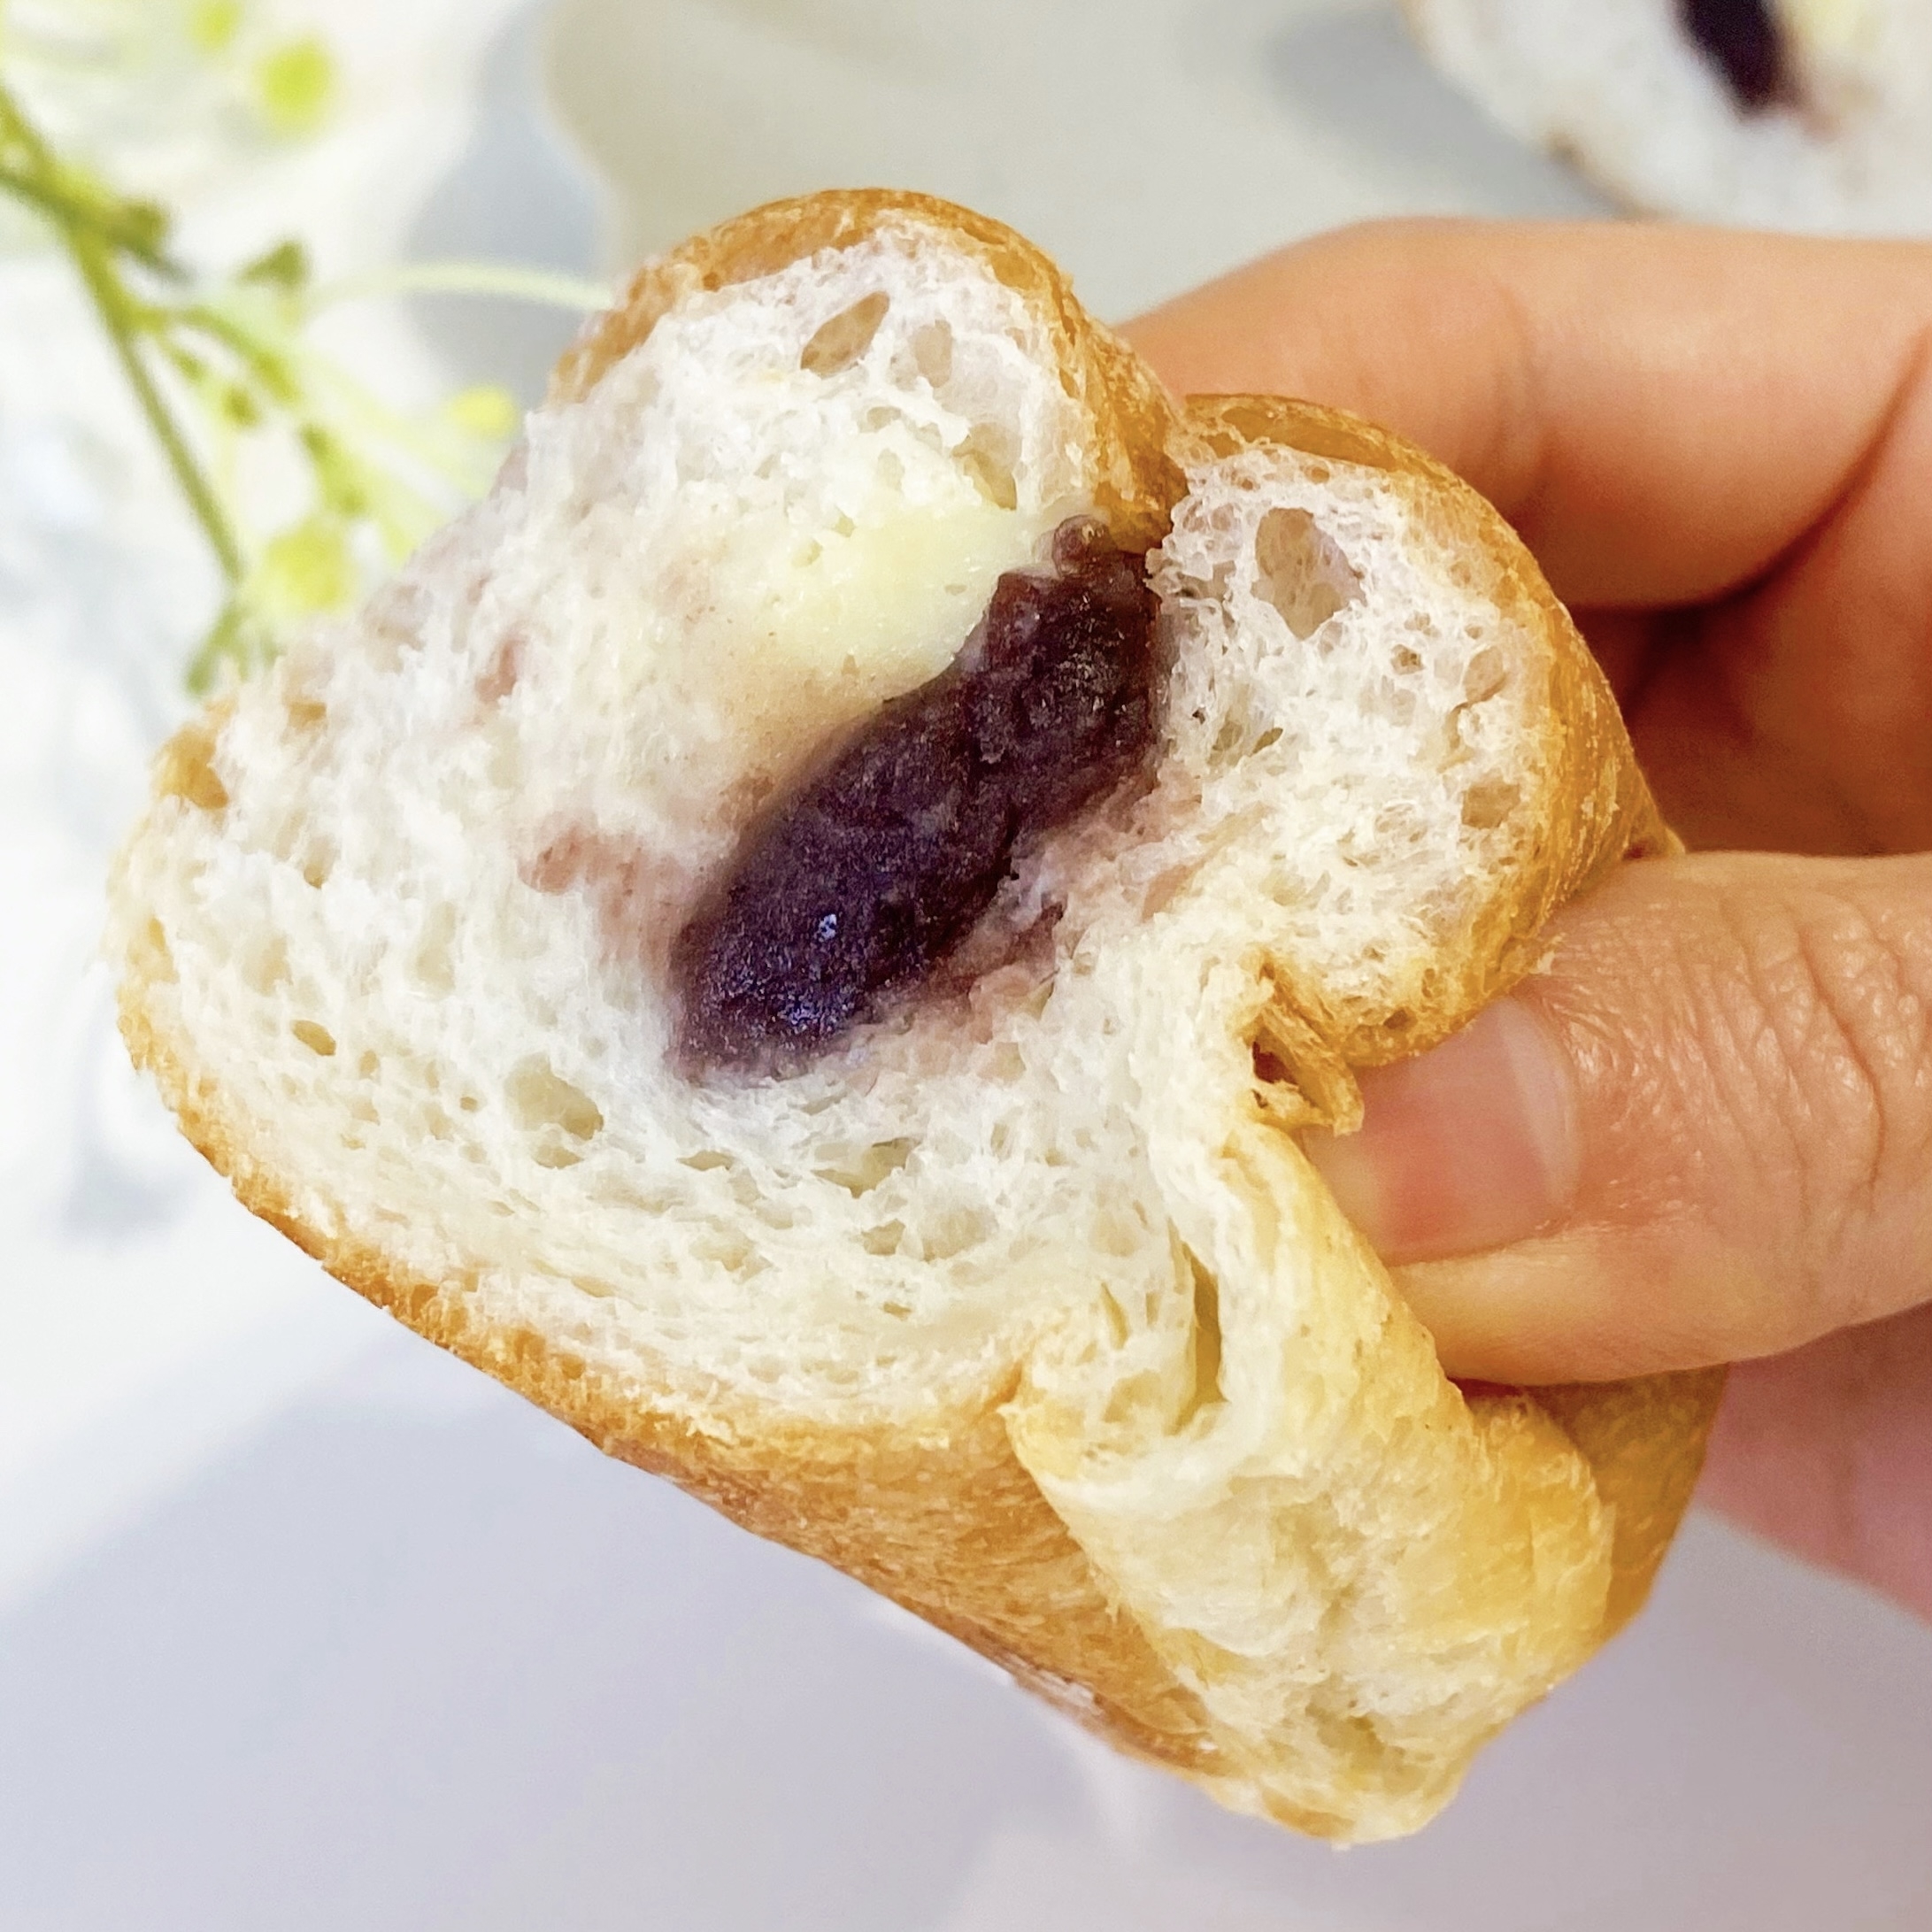 FamilyMart（ファミリーマート）の新商品「生フランスパン（あん＆マーガリン）」